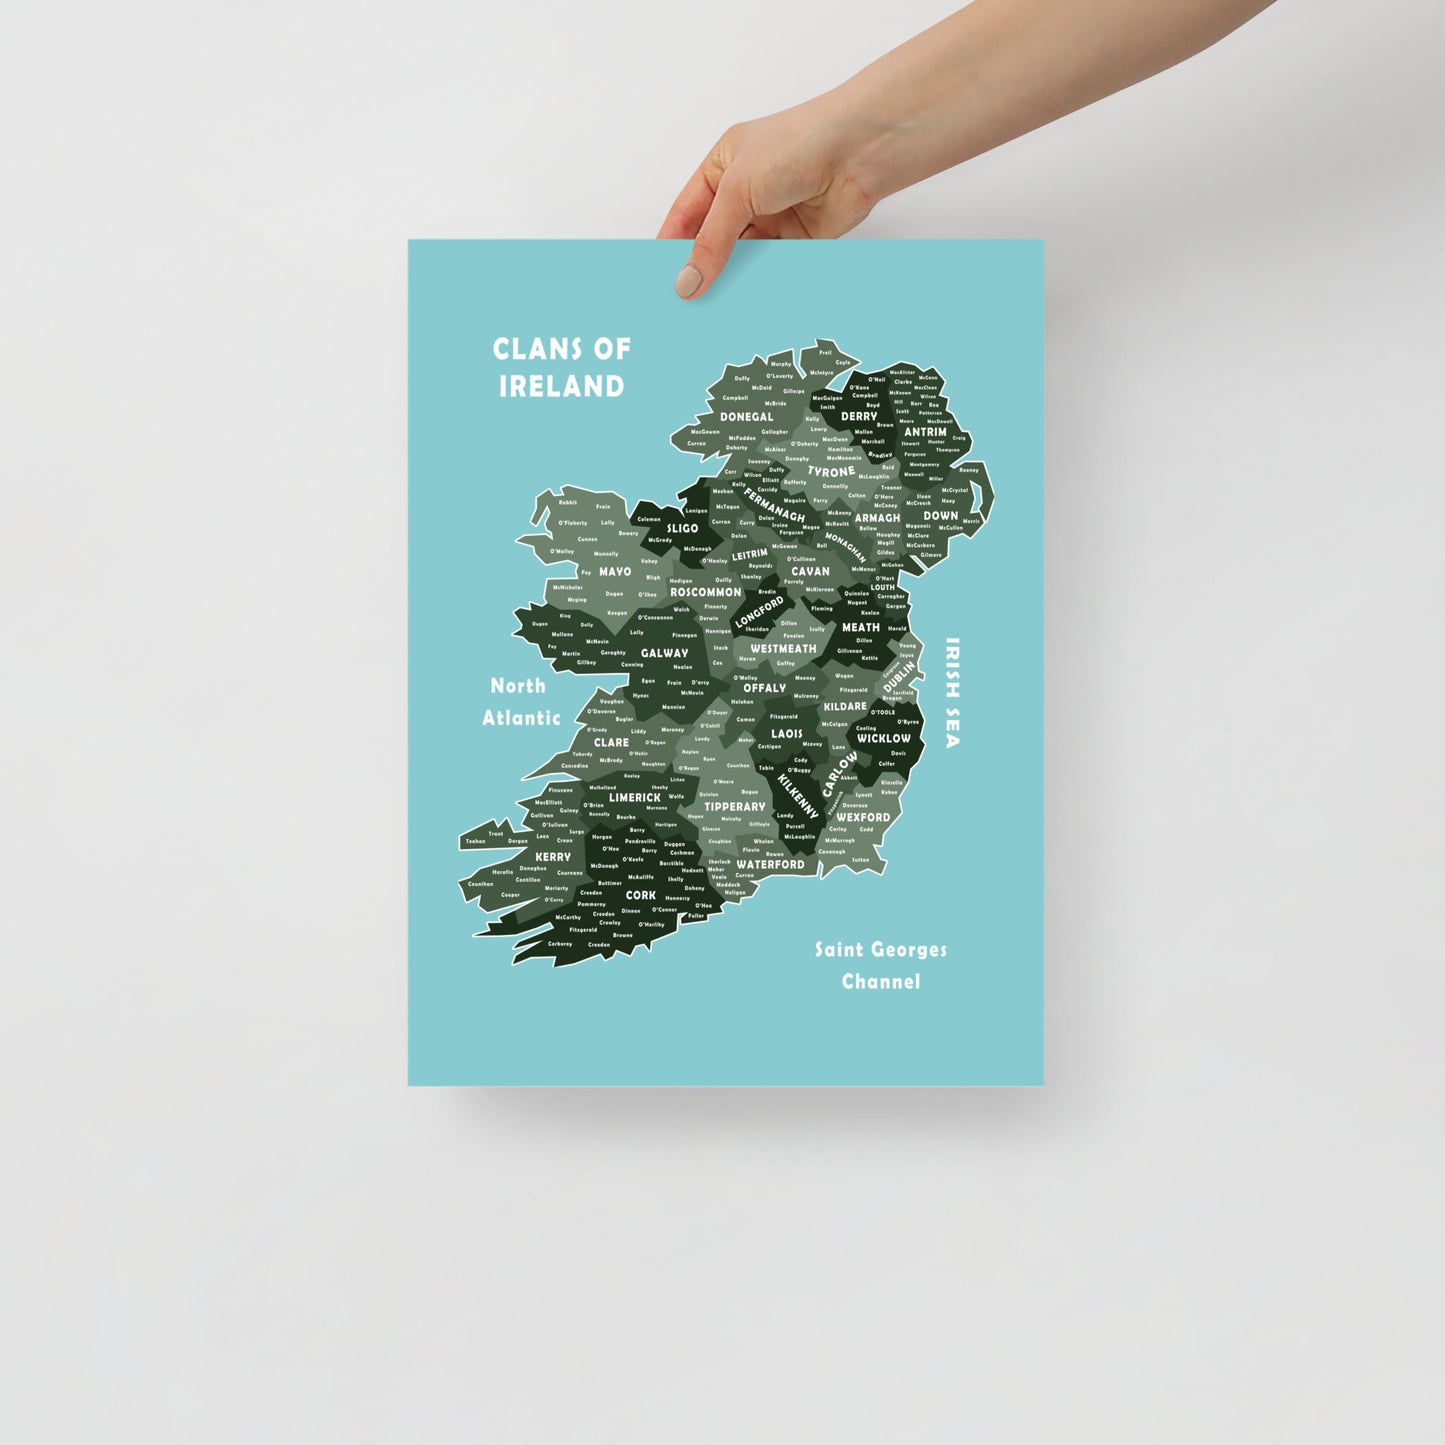 Unique Clans of Ireland (Print)